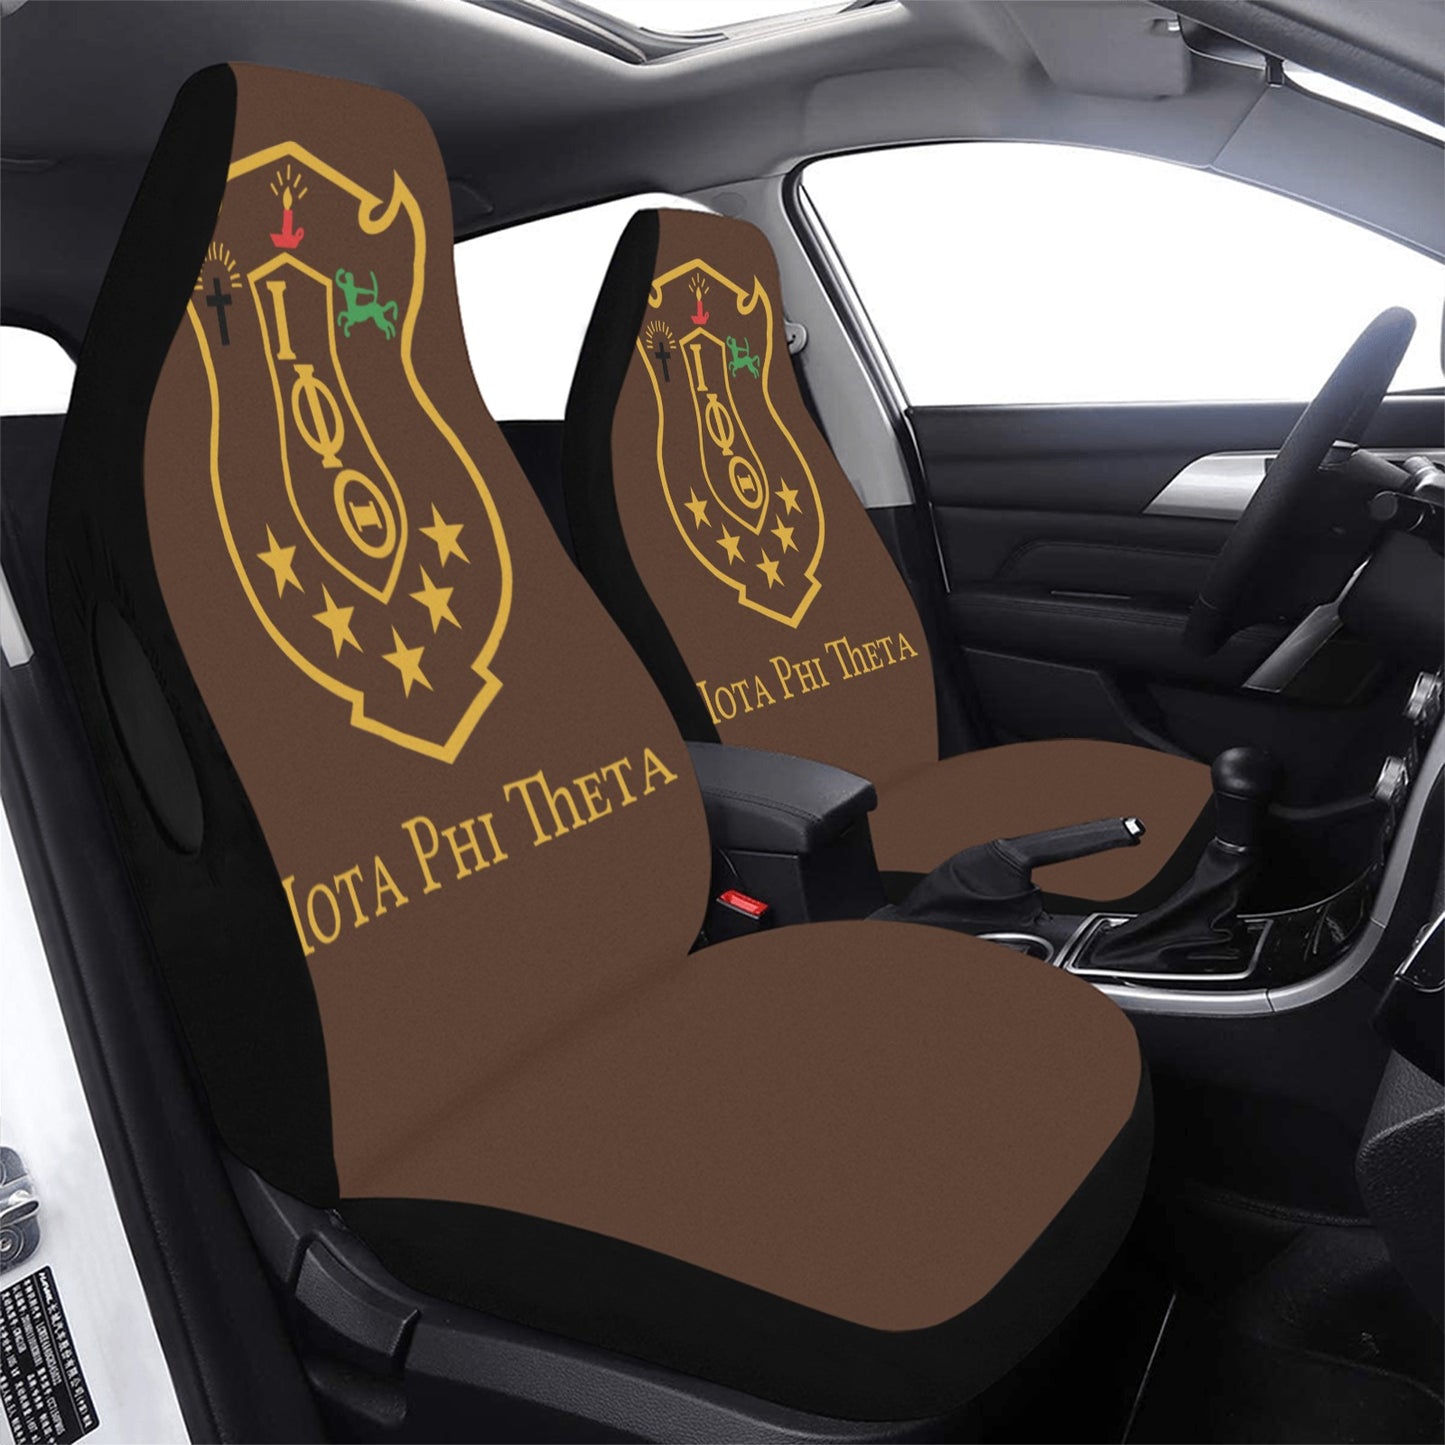 Iota Phi Theta Car Seat Cover